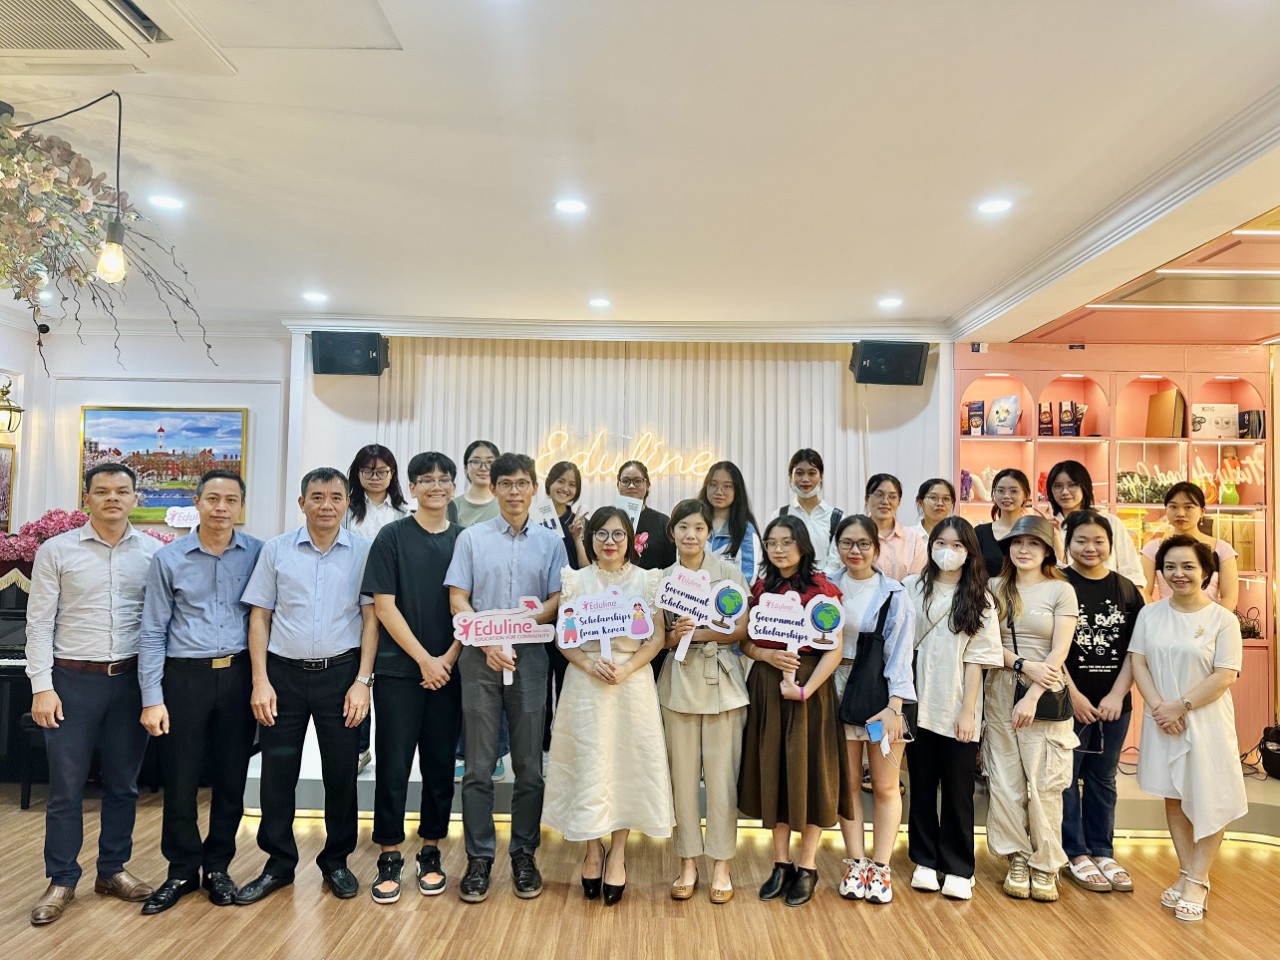 Eduline tổ chức hội thảo Gặp mặt đại diện trường Đại học Sungkyunkwan, tiếp tục khẳng định tinh thần "Học bổng vì cộng đồng"